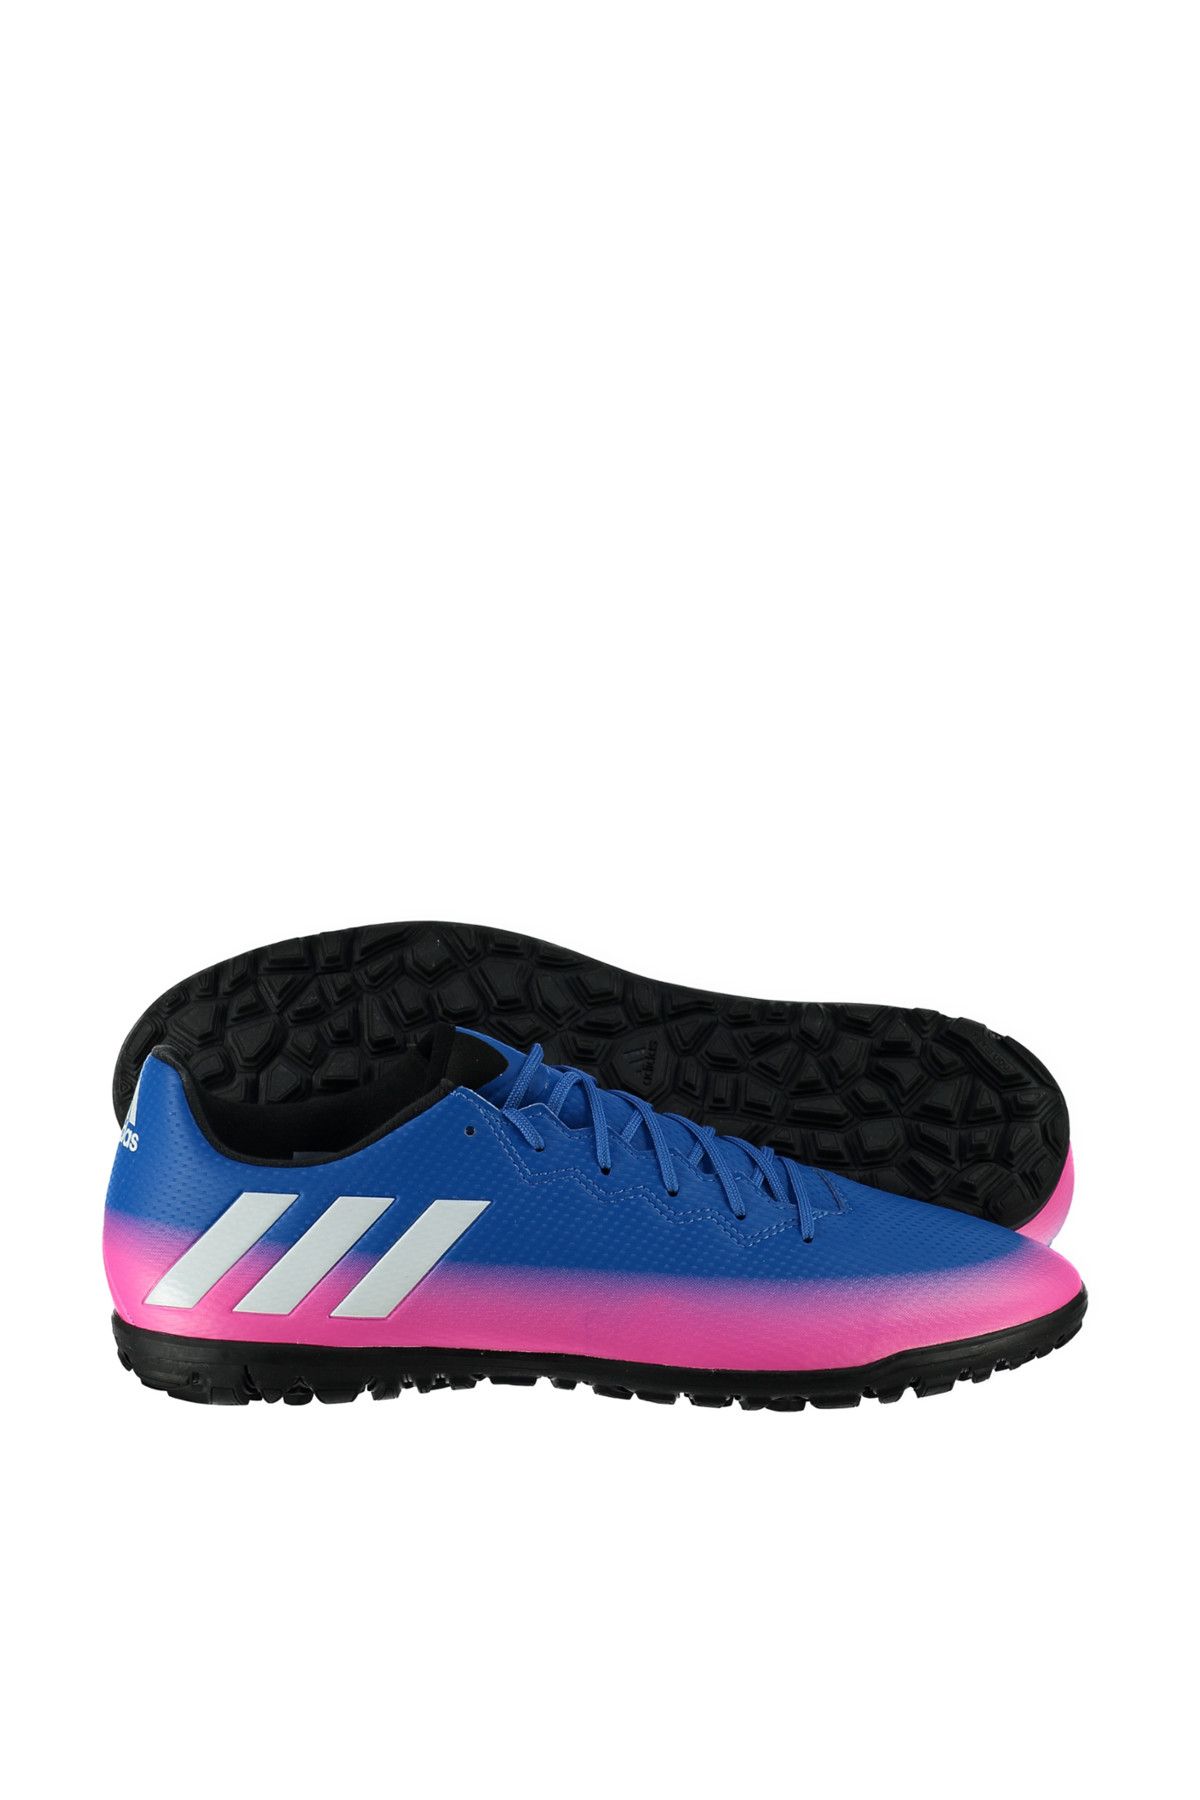 adidas Erkek Halı Saha Ayakkabısı - Messi 16.3 Tf - S77051